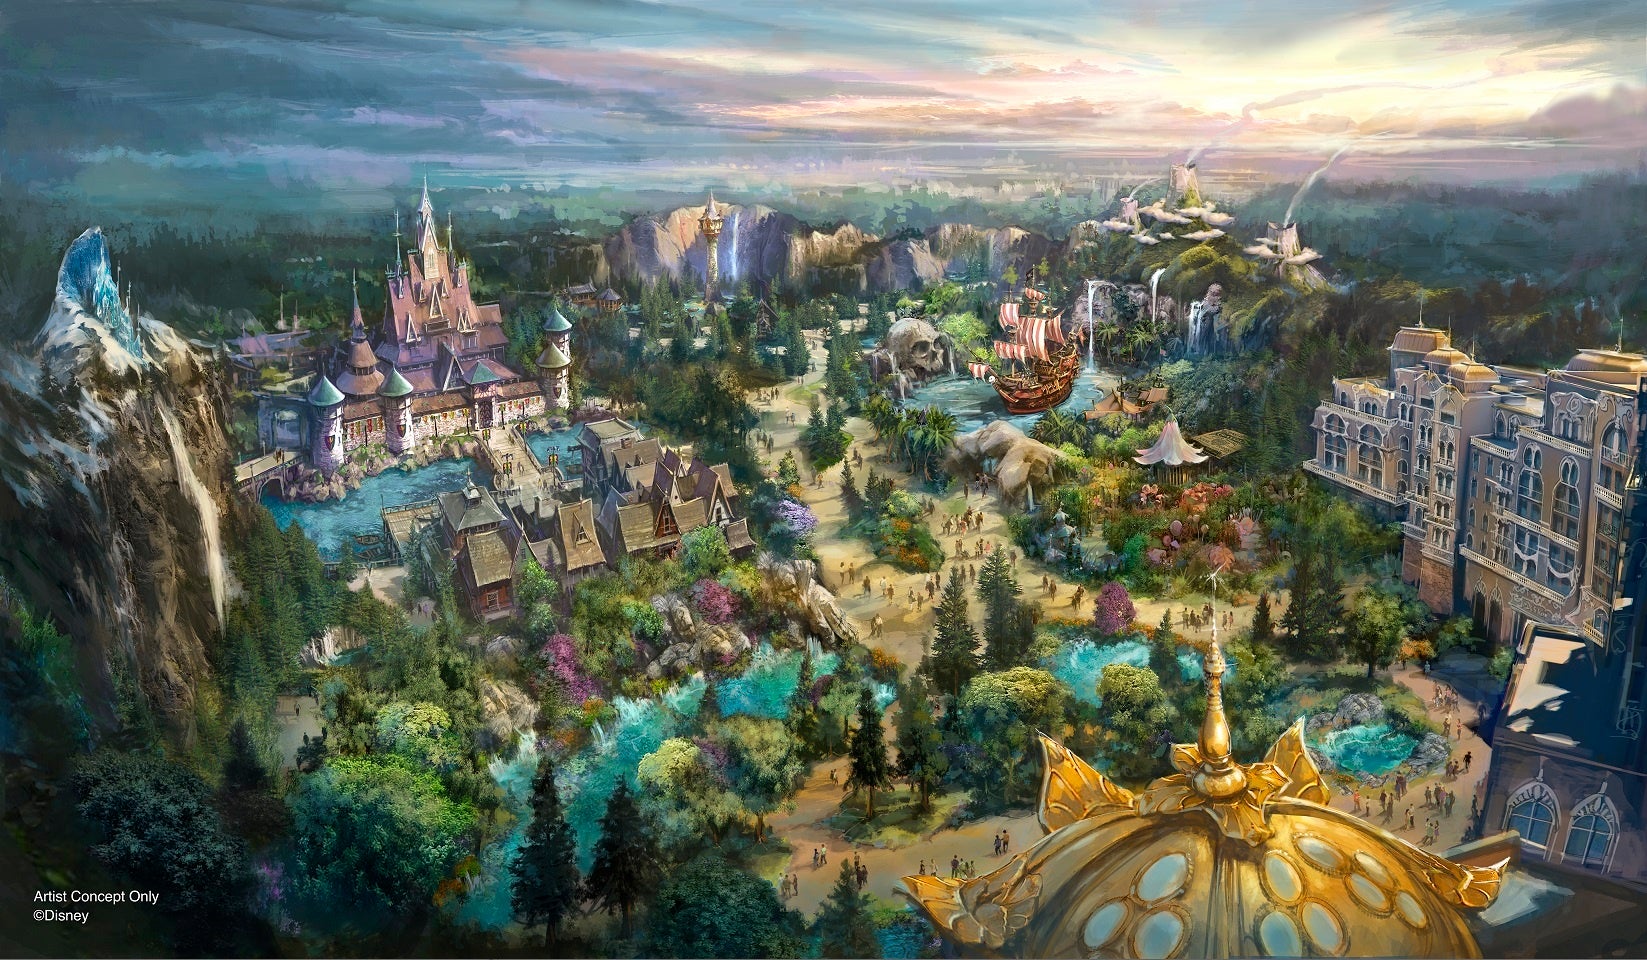 東京ディズニーシー 8番目の新テーマポート「ファンタジースプリングス」アトラクションなど施設の詳細を初公開！